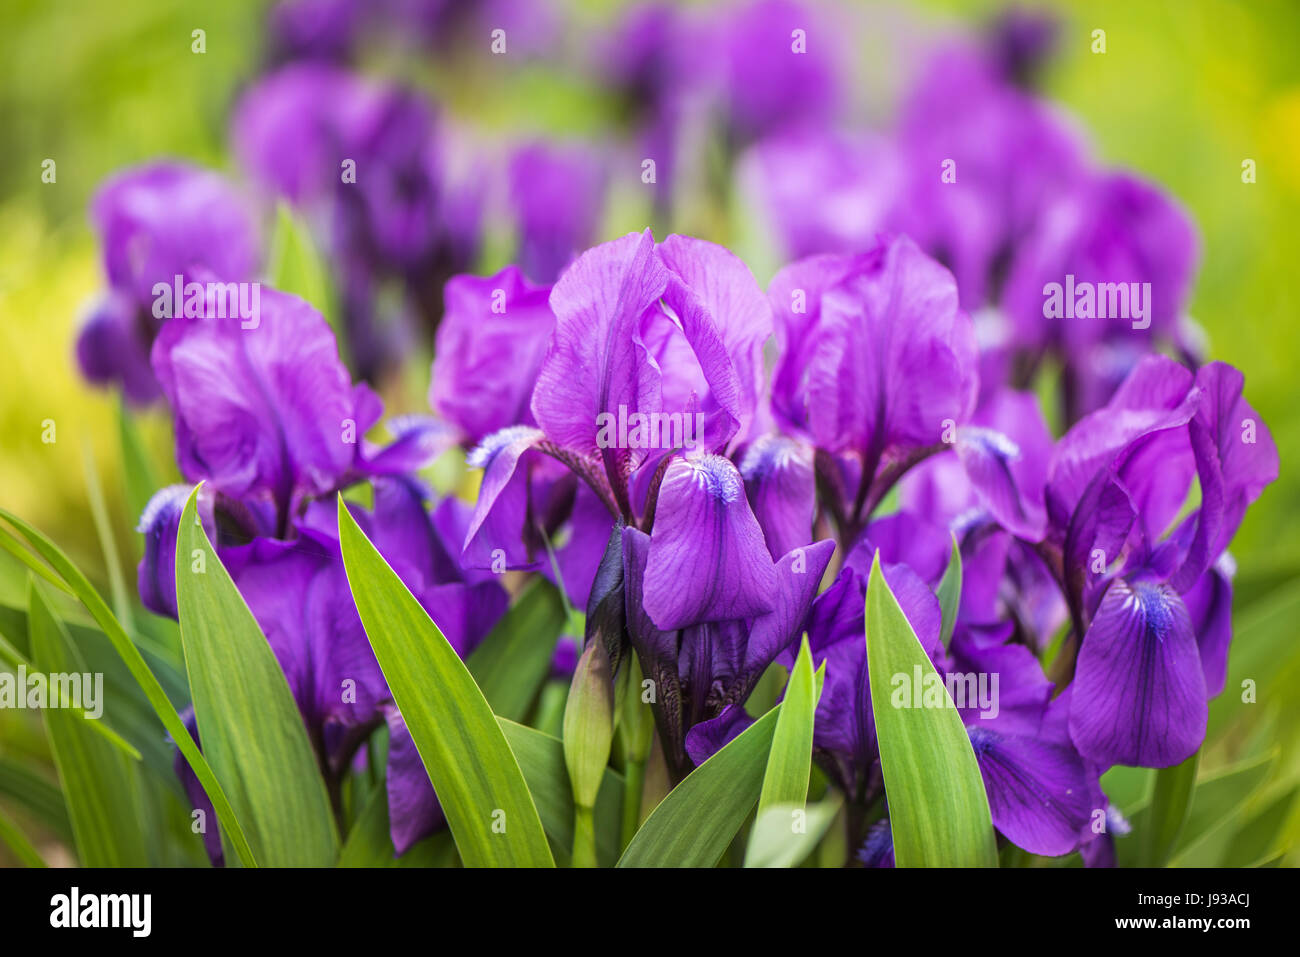 purple Japanese iris flowers Stock Photo